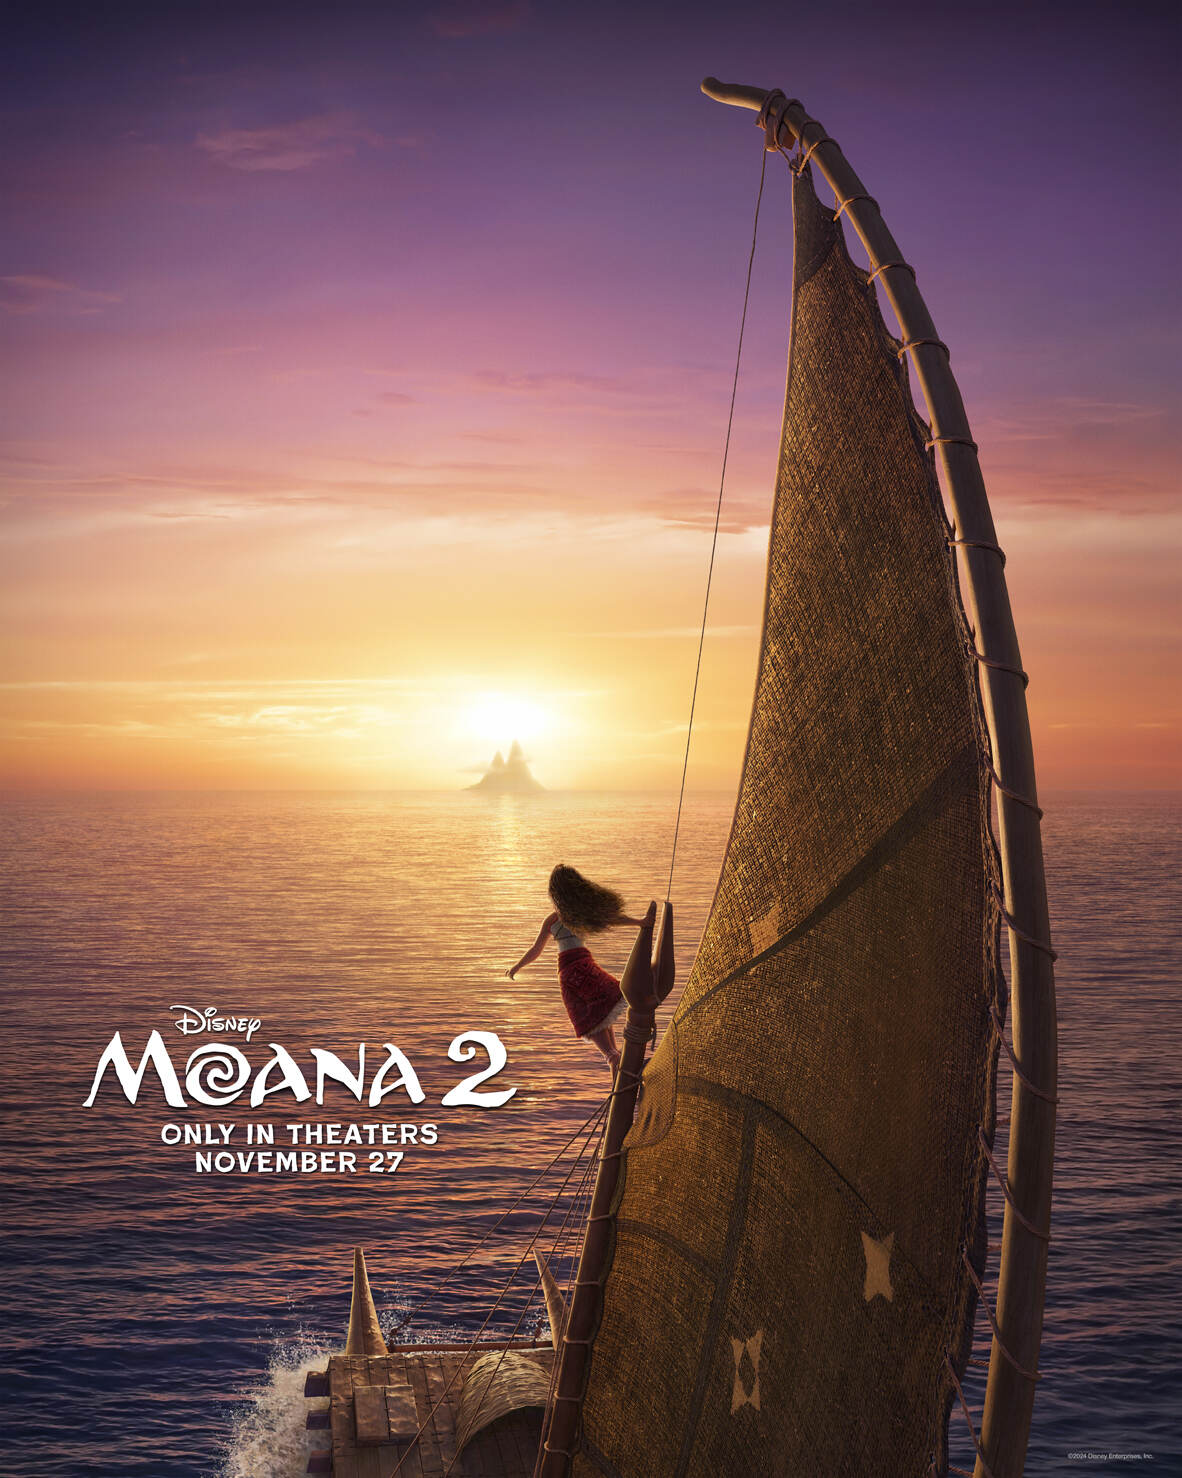 موانا در دریا سوار بر قایق بادی در پوستر رسمی انیمیشن Moana 2